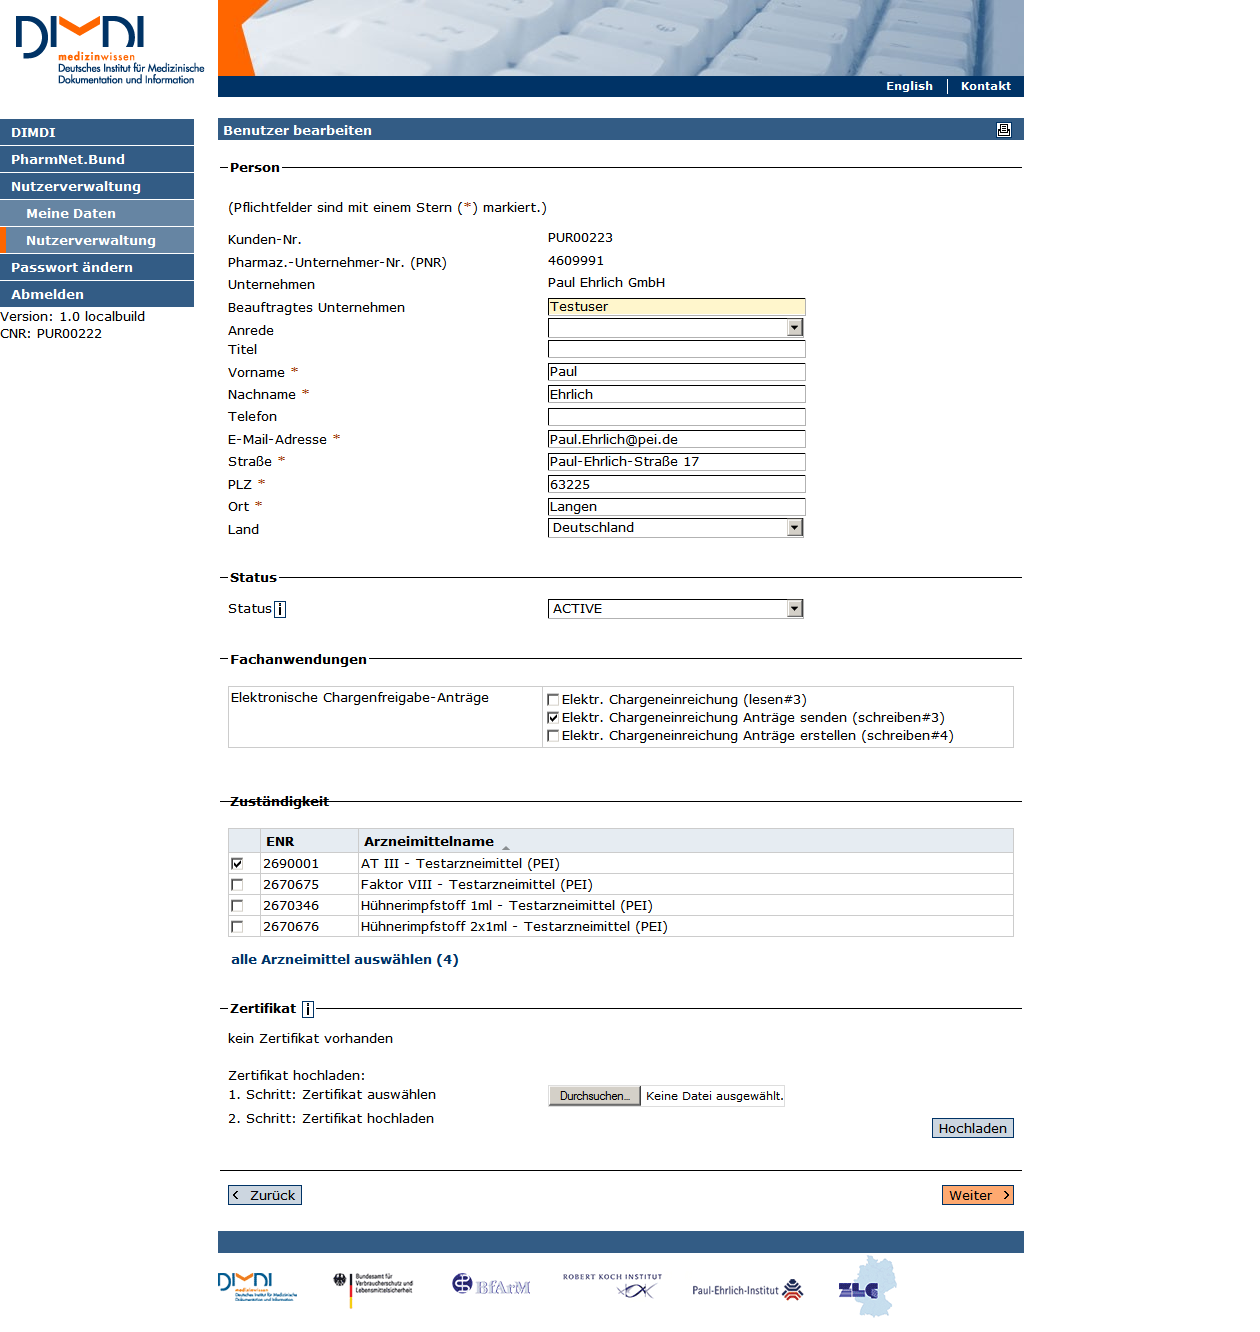 Abbildung 8: Bildschirm User hinzufügen Im Formular sind ggf. PNR und Unternehmensname vorbesetzt. Der orgaadmin trägt nun die Angaben für seine/n Kollegin/Kollegen ein.